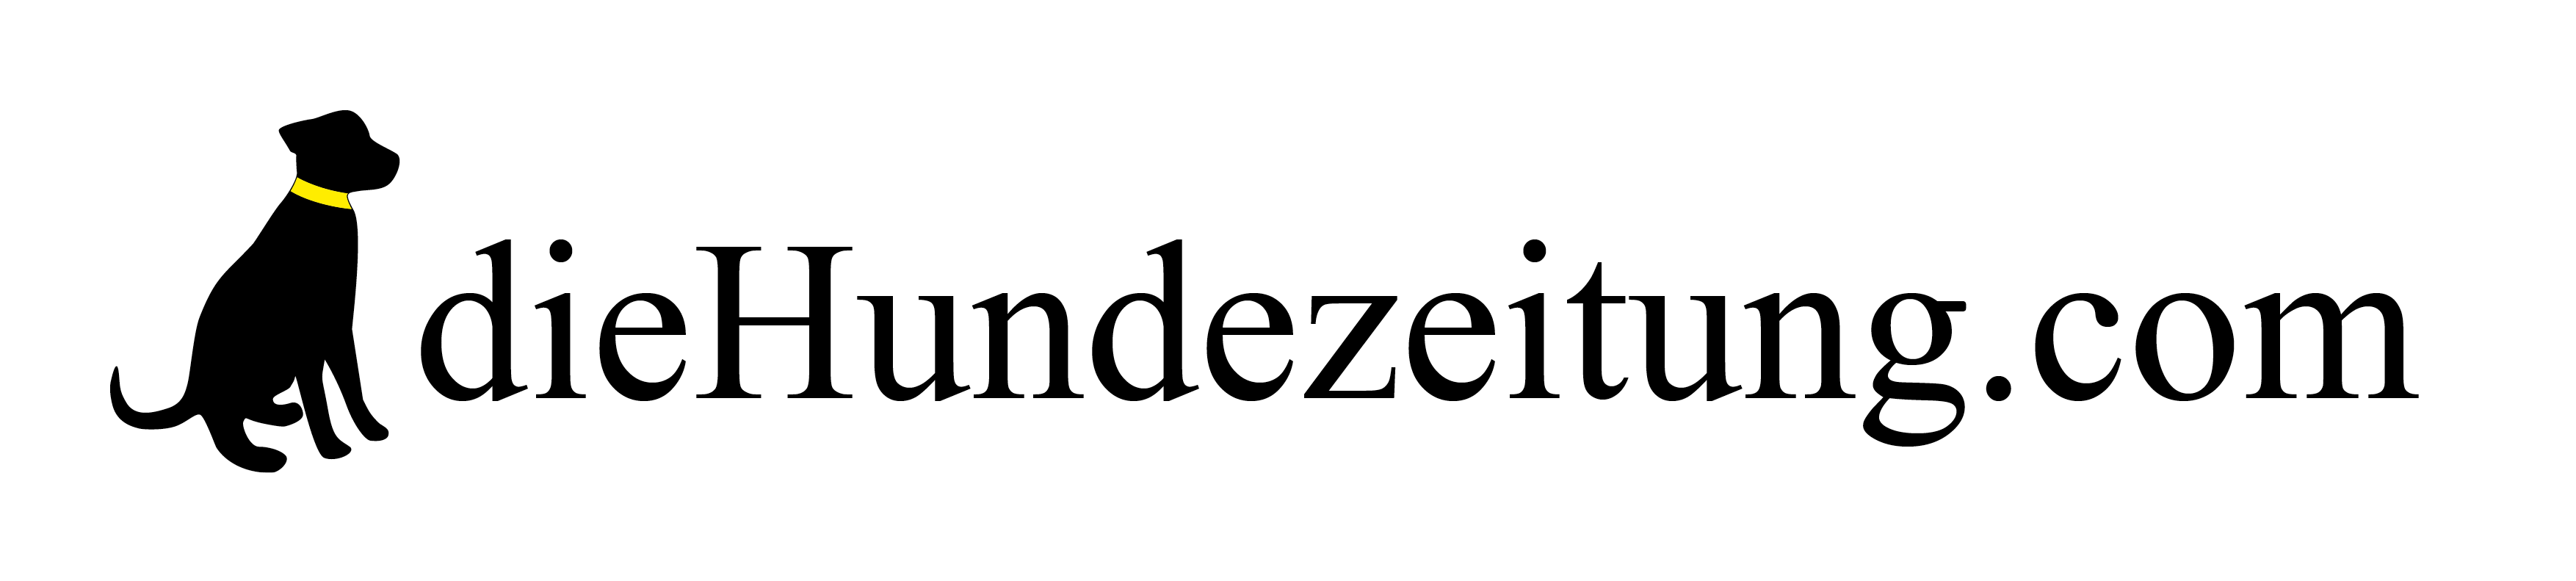 dieHundezeitung.com – diehundezeitung.com